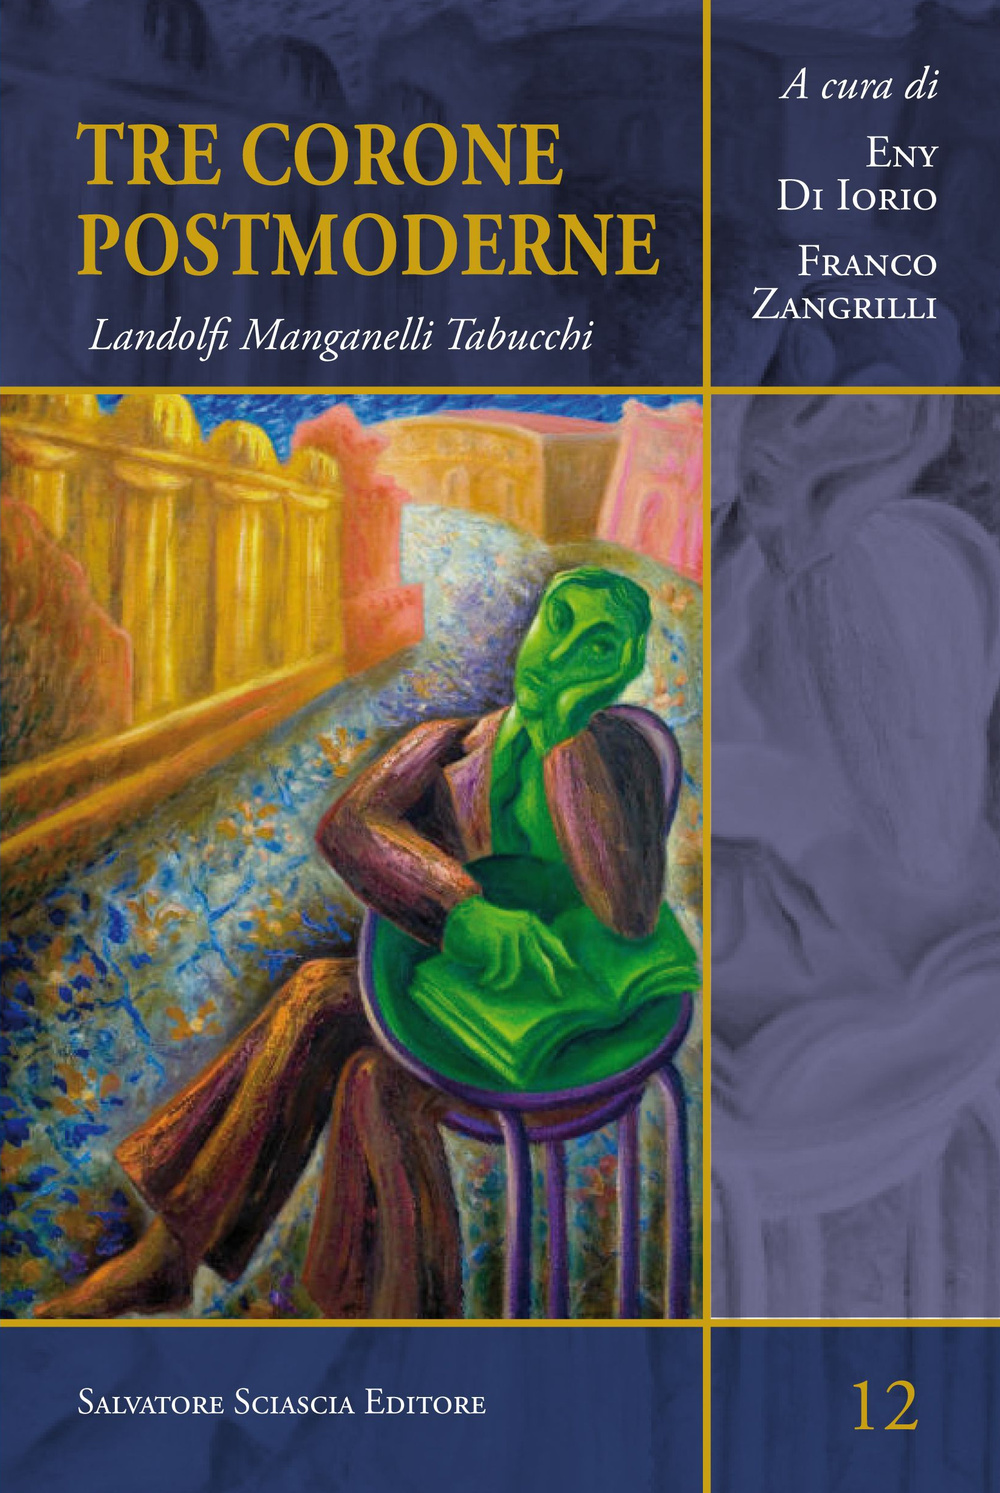 Libri Tre Corone Postmoderne. Landolfi Manganelli Tabucchi NUOVO SIGILLATO, EDIZIONE DEL 05/01/2015 SUBITO DISPONIBILE